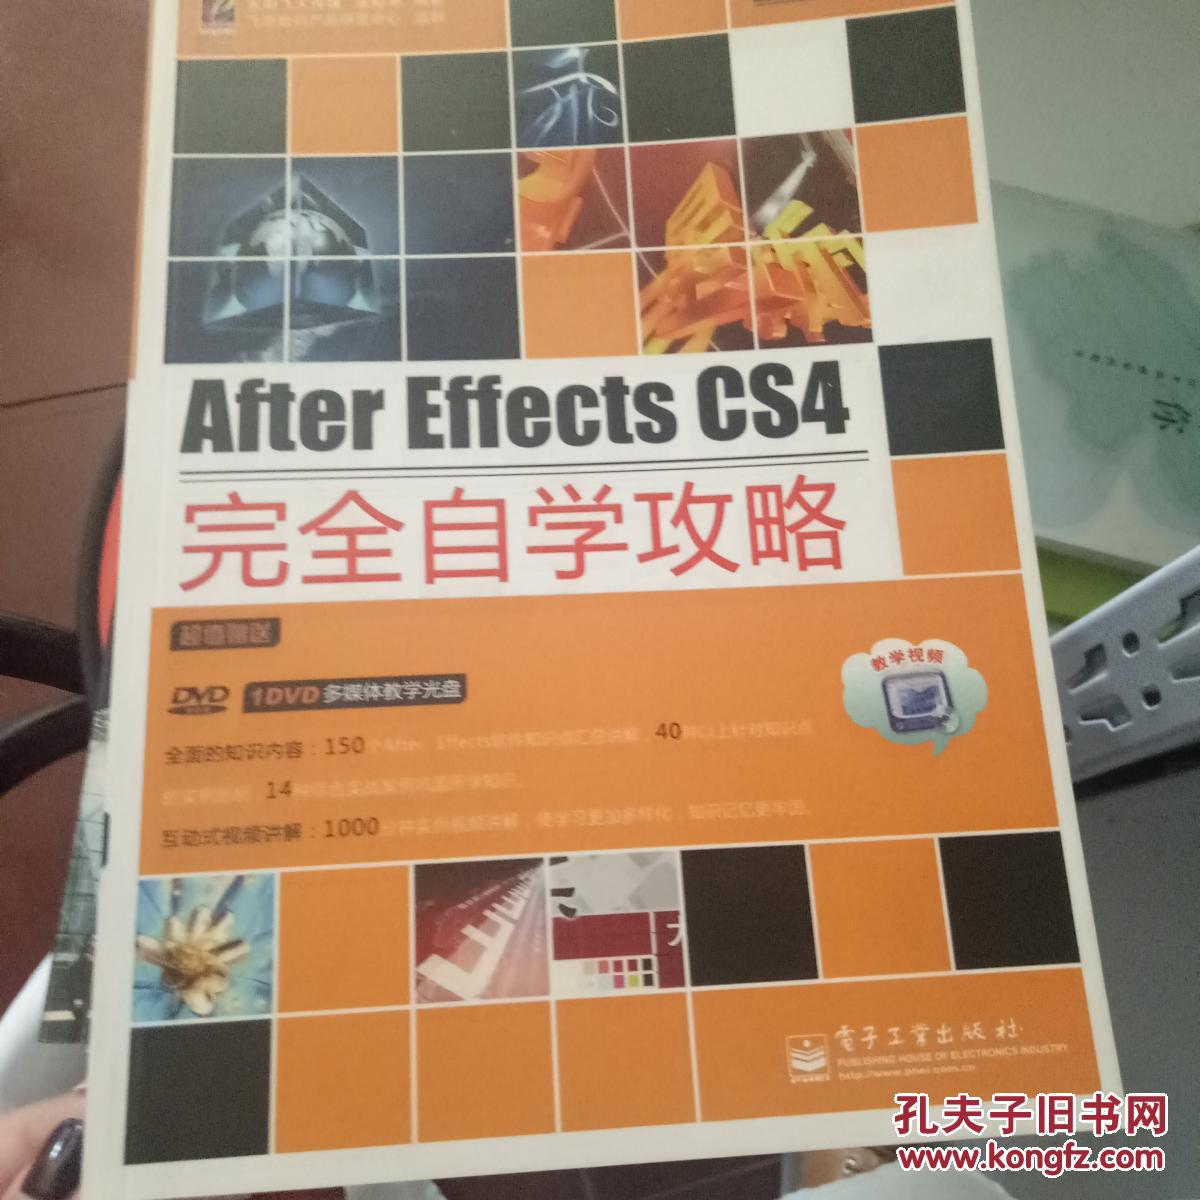 After Effects CS4完全自学攻略无盘